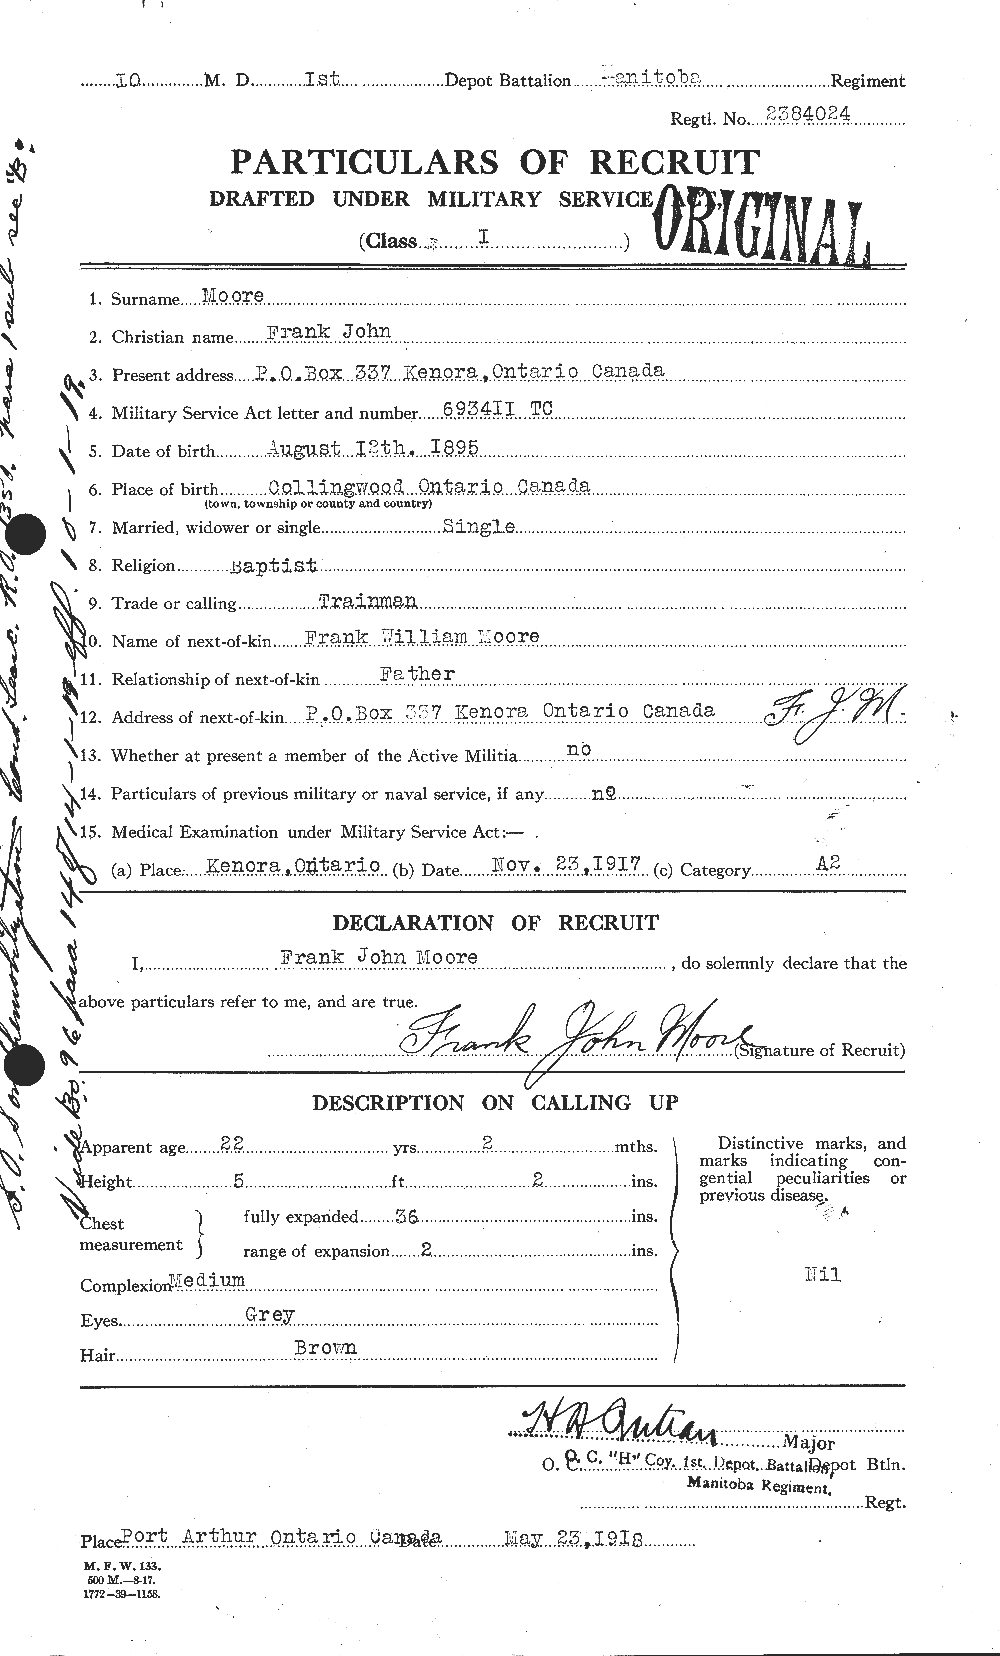 Dossiers du Personnel de la Première Guerre mondiale - CEC 506704a